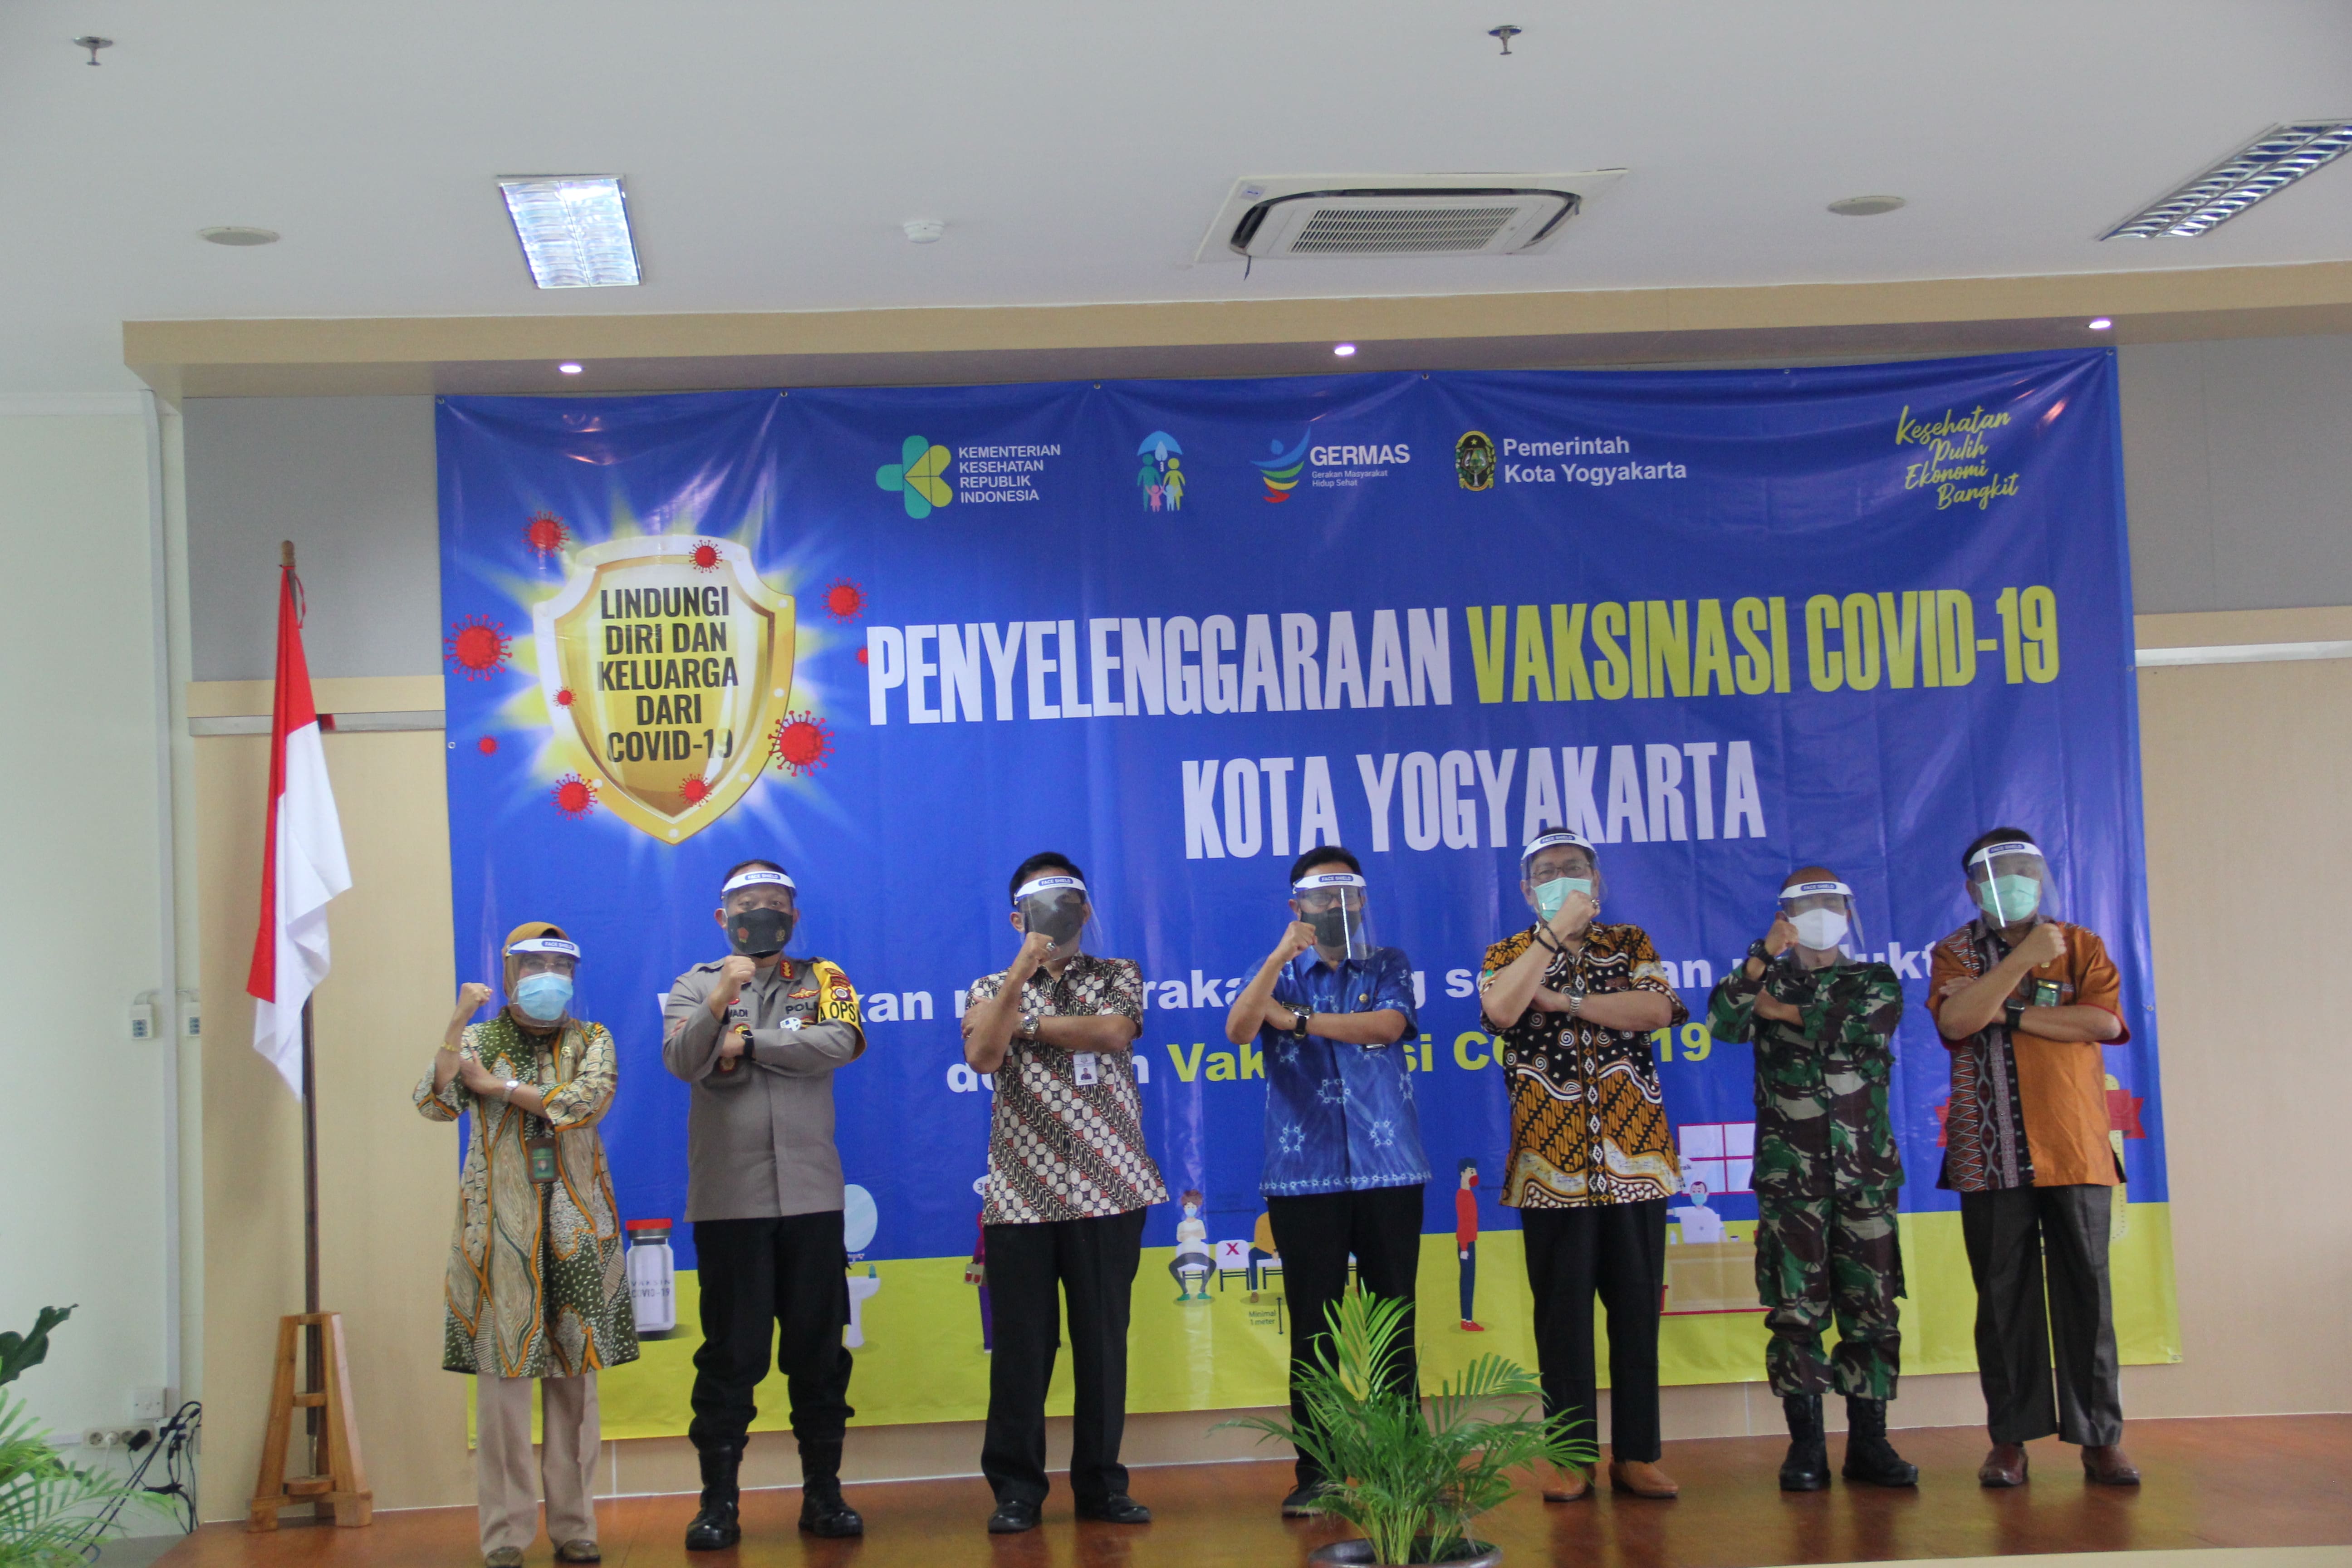 Ketua Pengadilan Negeri Yogyakarta Menjadi Penerima Pertama Vaksid Covid-19 di Kota Yogyakarta